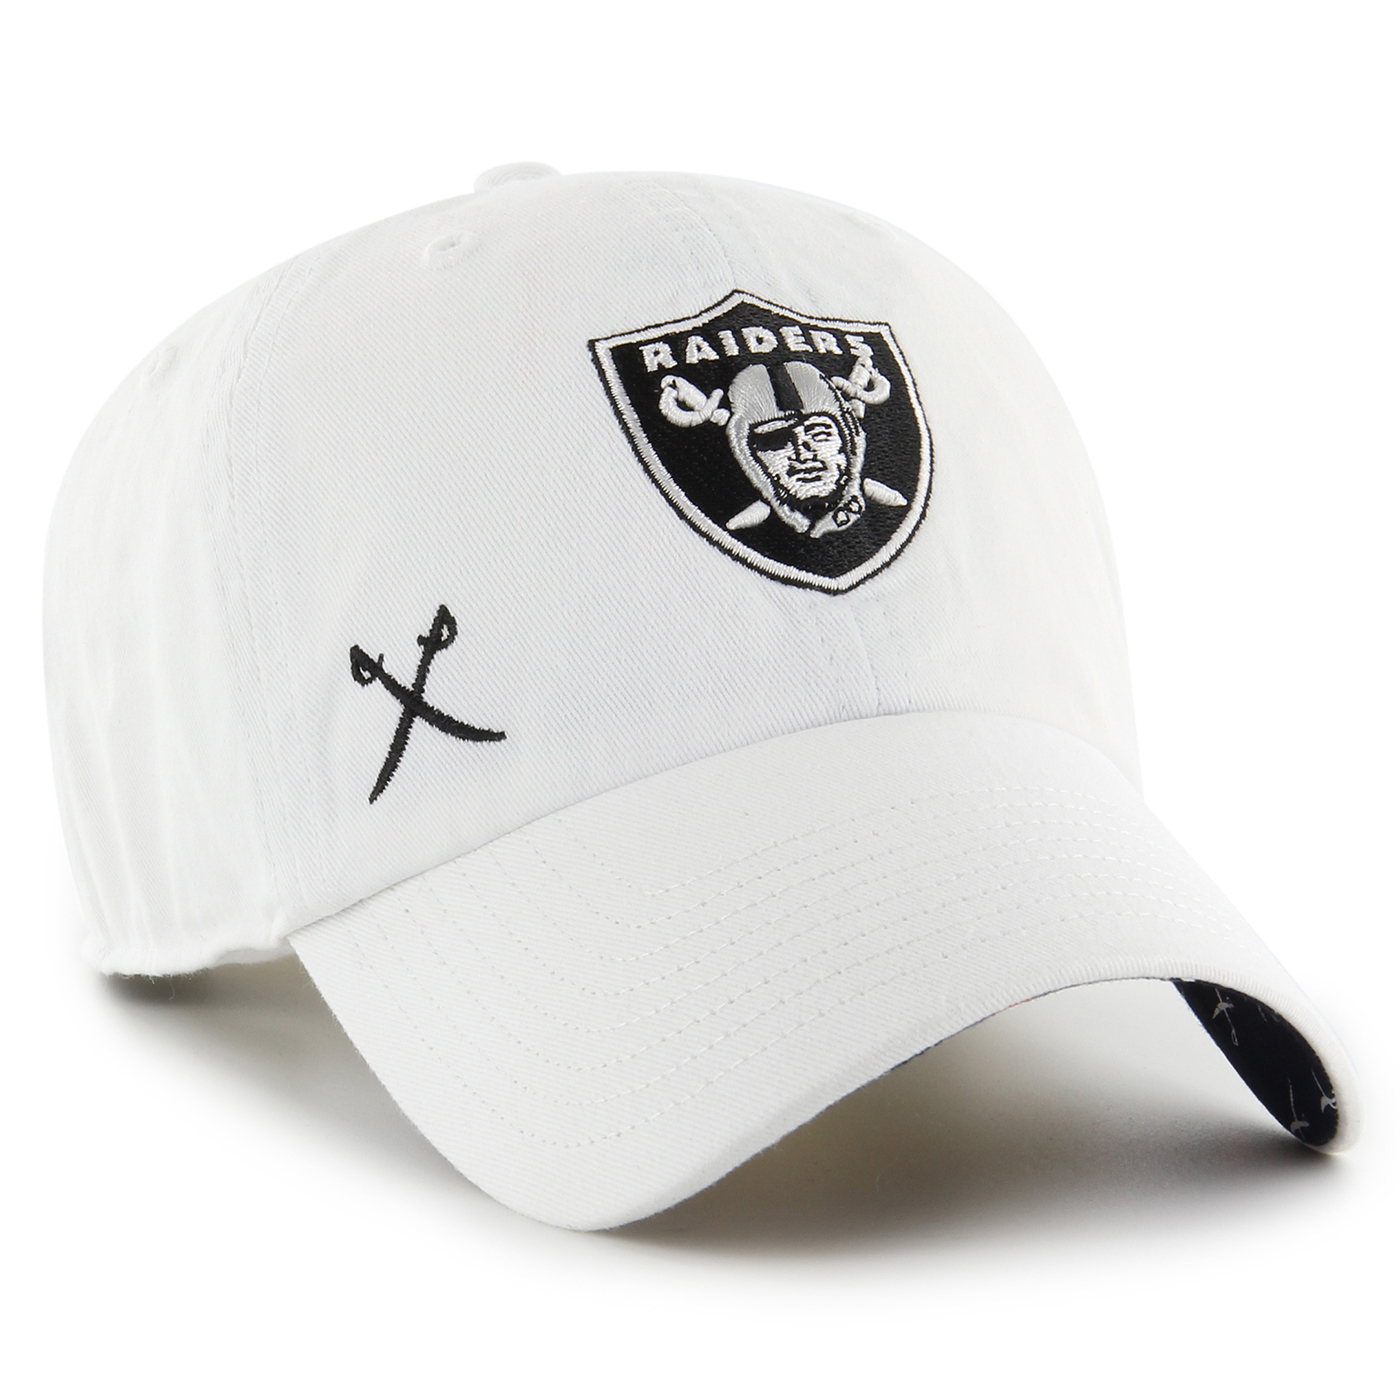 Las Vegas Raiders Women's 47 Brand Clean Up Adjustable Hat